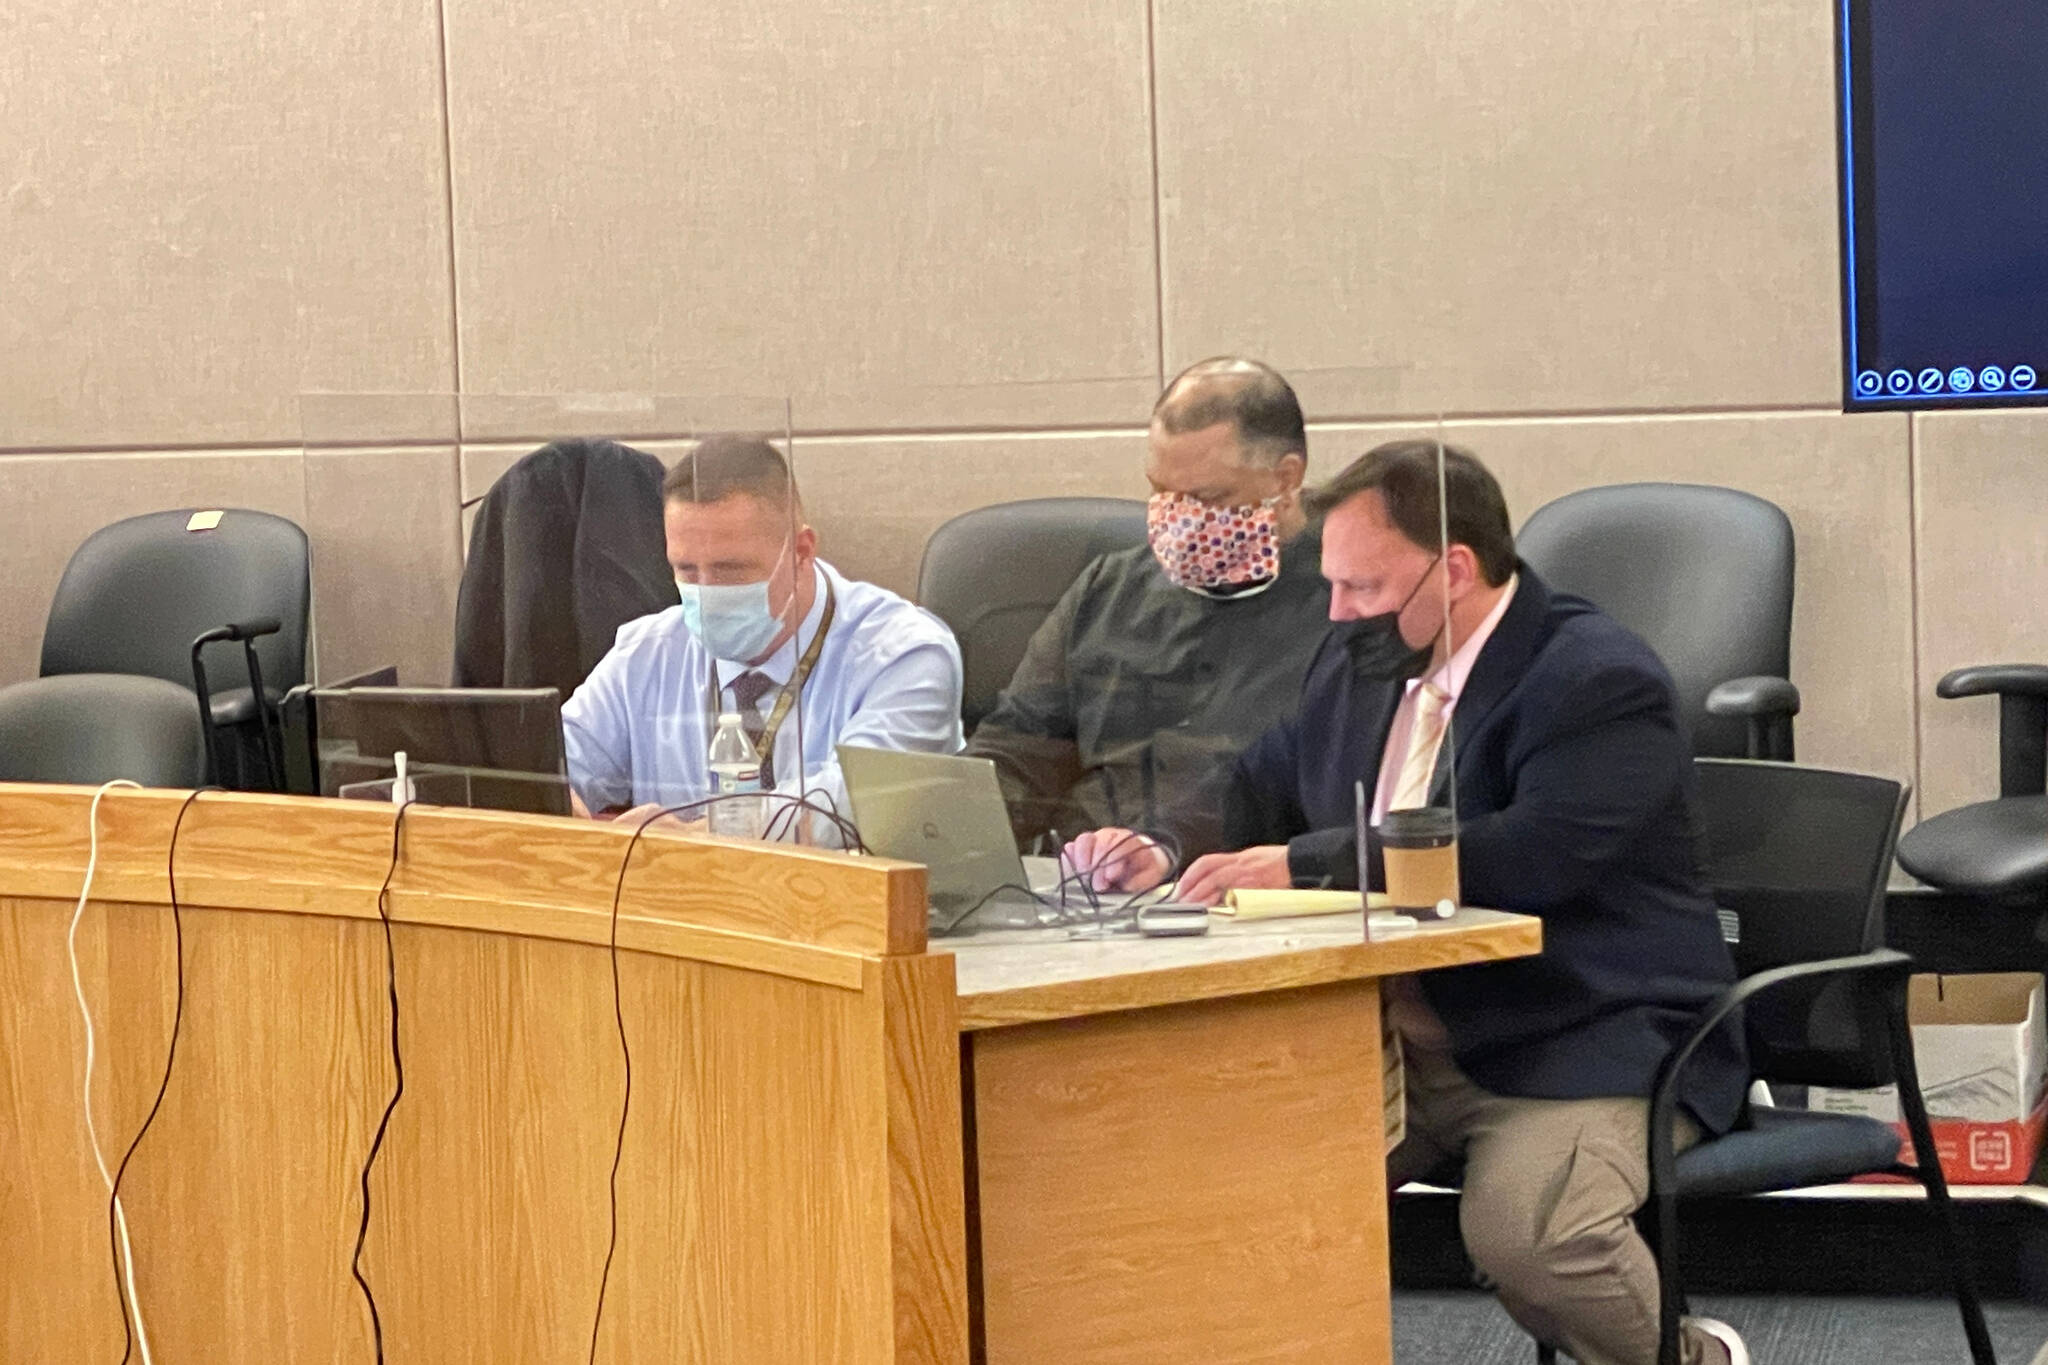 Investigator Markus Bressler, defendant John Stapleton, and public defender Eric Hedland sit in court on Jan. 13, 2022. (Michael S. Lockett / Juneau Empire File)